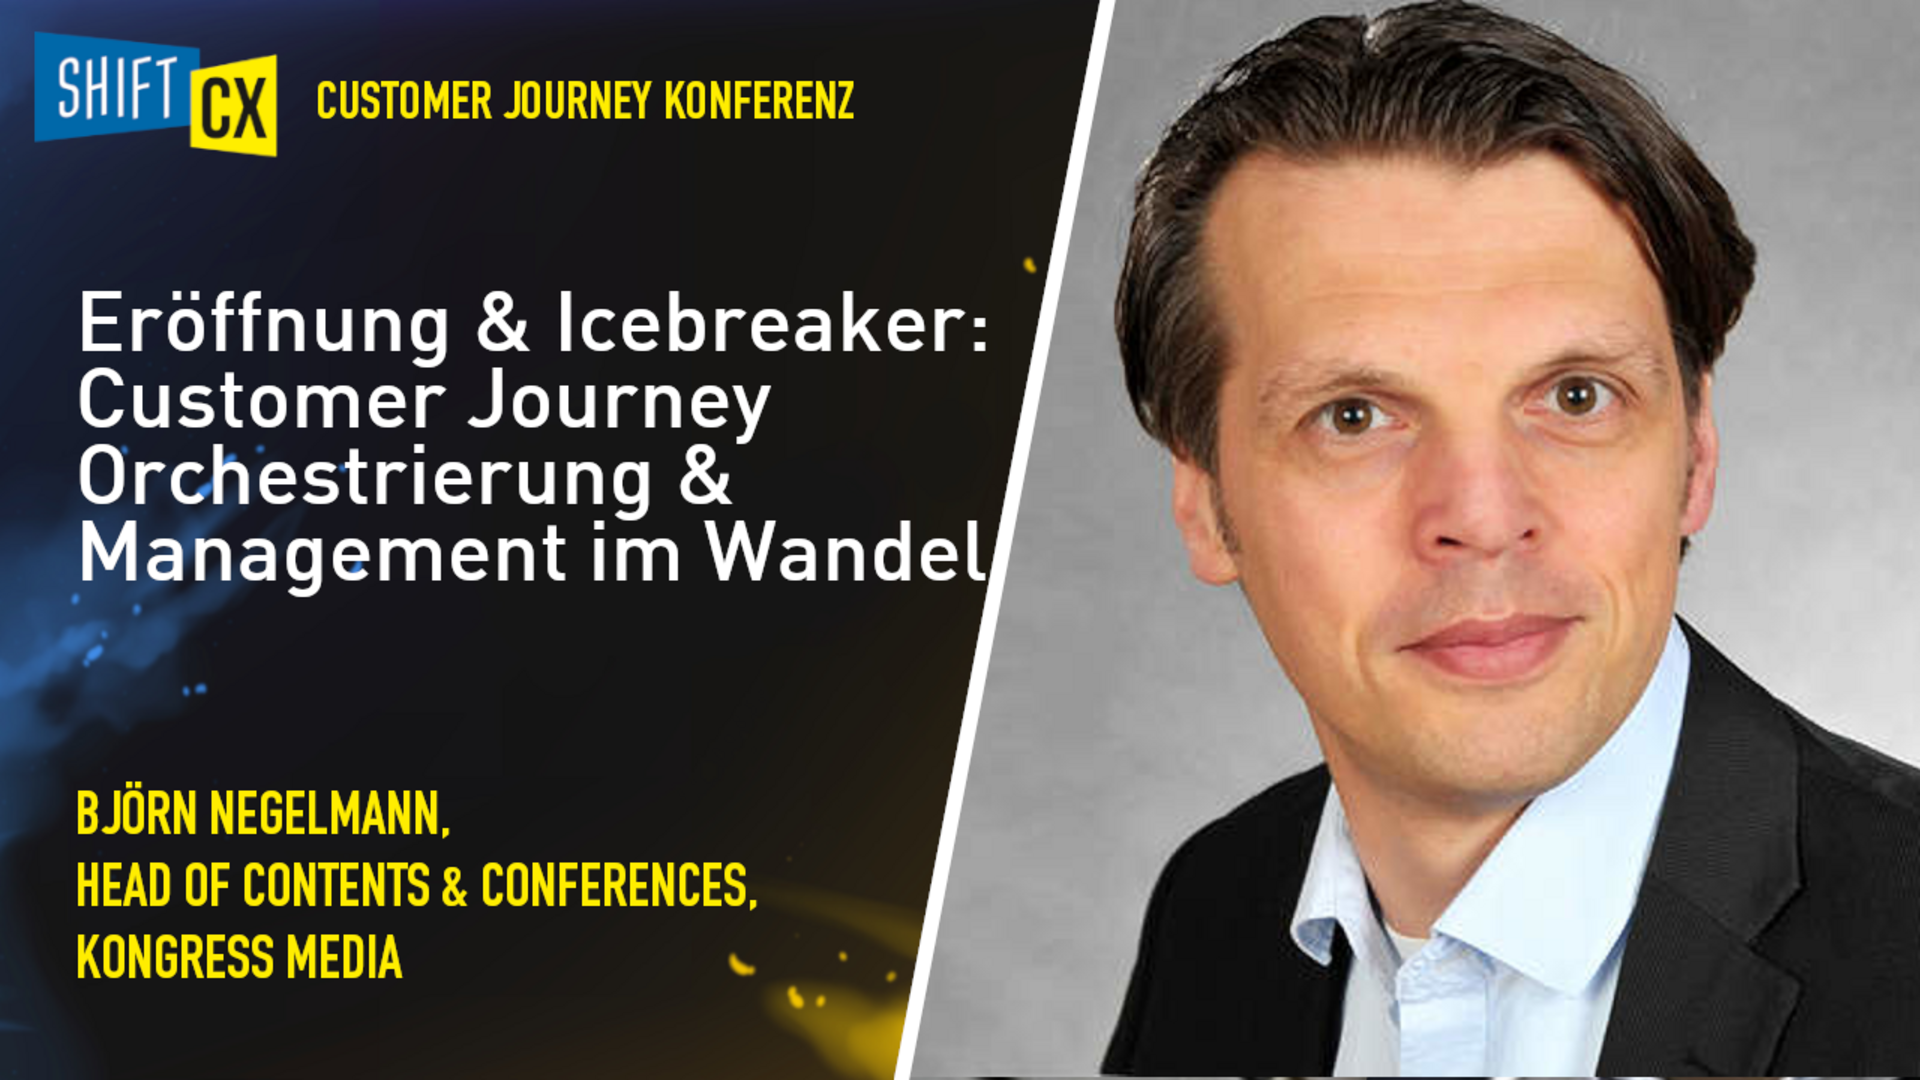 Eröffnung & Icebreaker: Customer Journey Orchestrierung & Management im Wandel